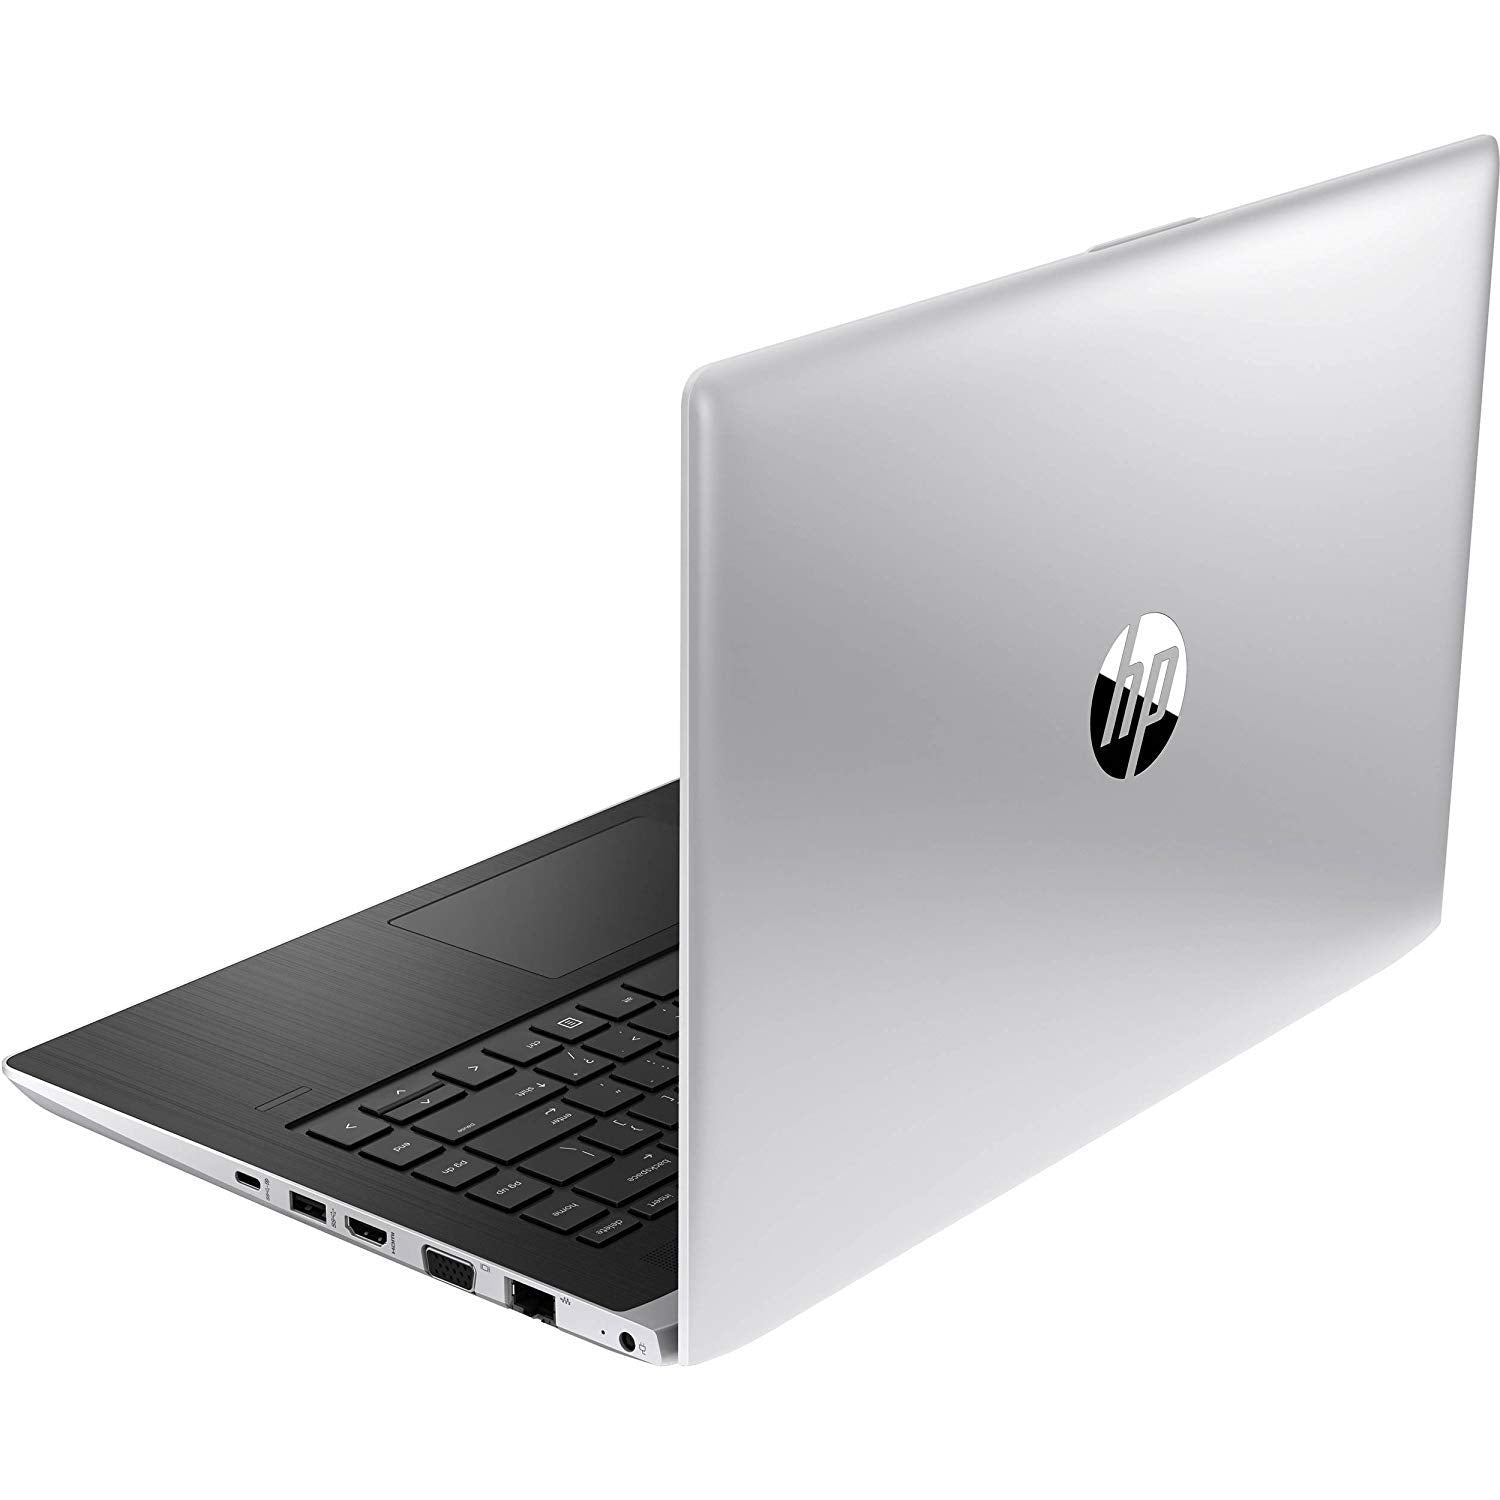 HP ProBook 440 G5 Laptop Intel i5-8250U, 8GB RAM, 256GB SSD, 15.6-in FHD 1920x1080, Win10 Pro